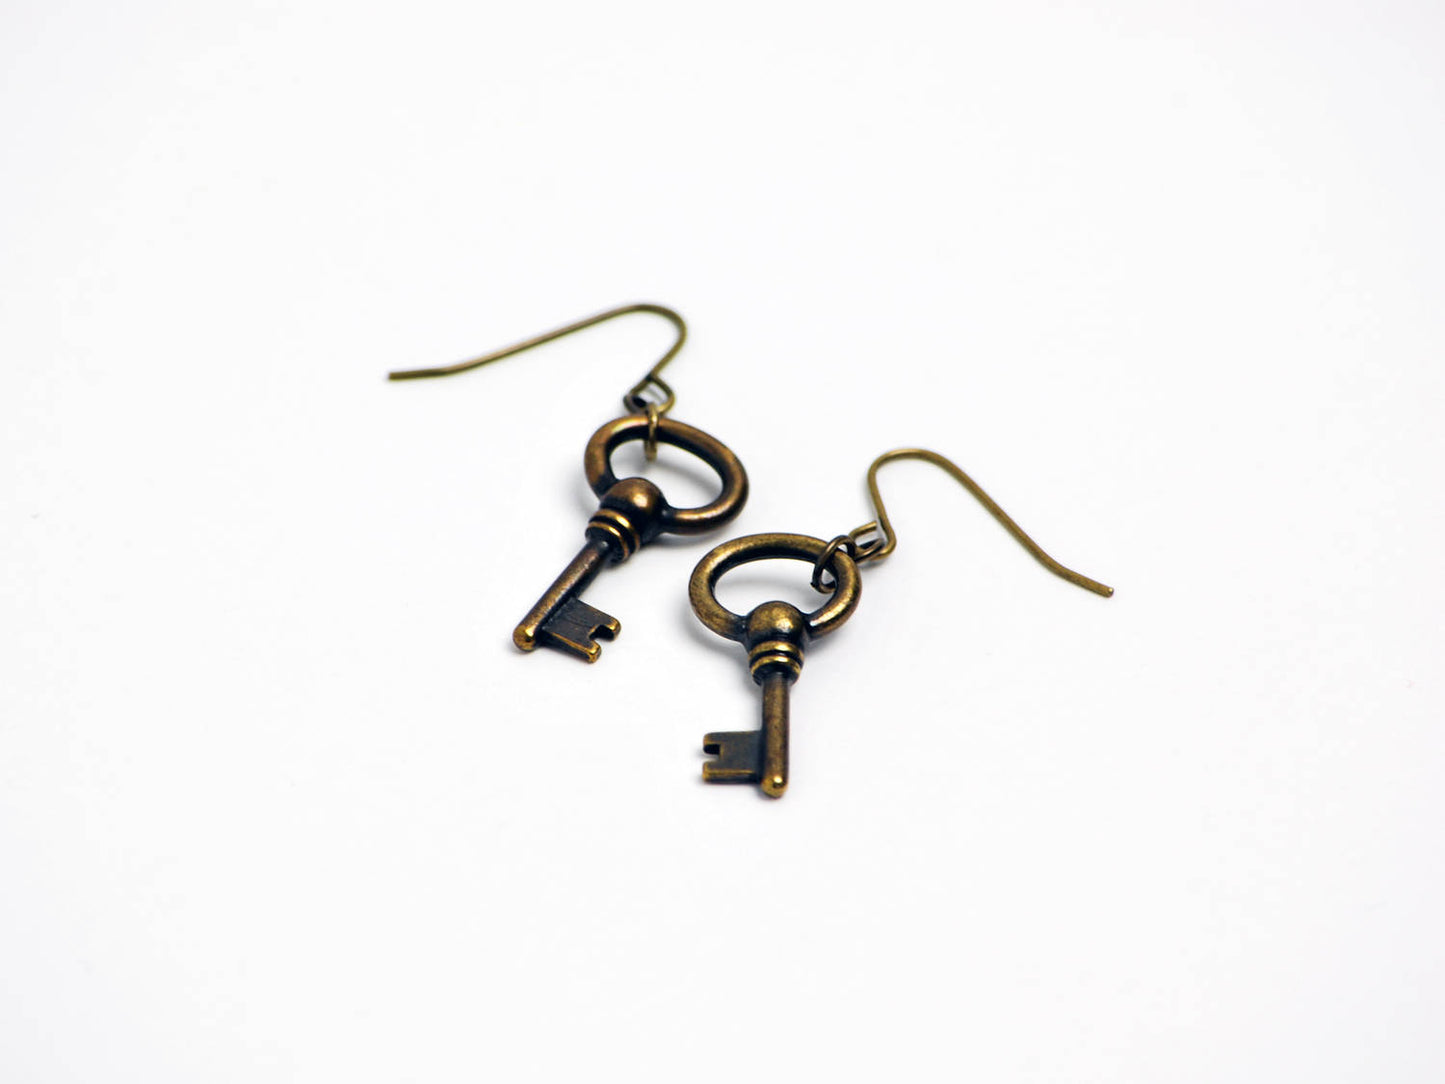 Oval Key Earrings in Antique Brass